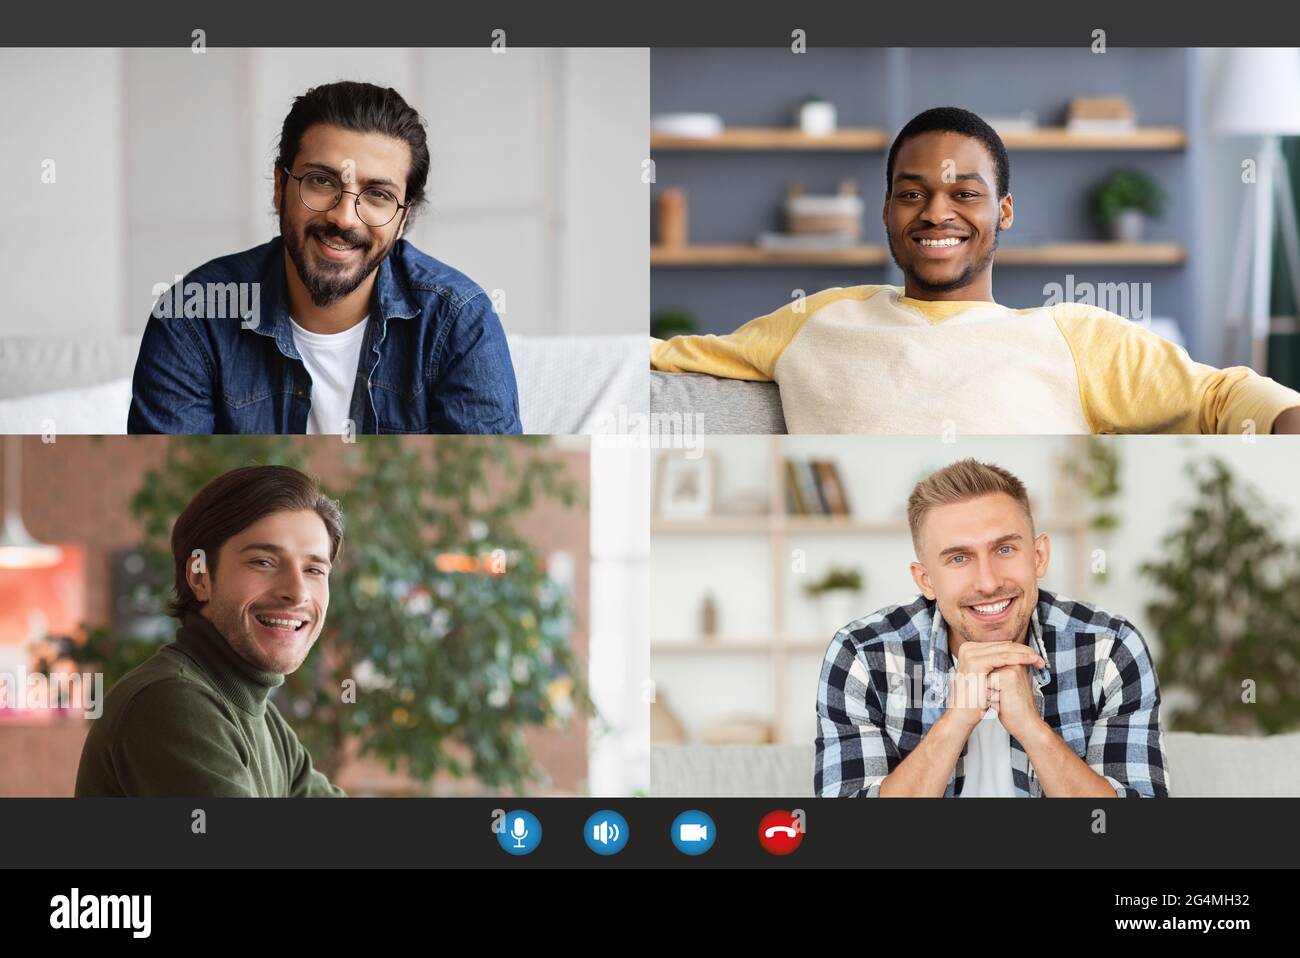 Chat online di amici, nuova normalità di comunicazione durante covid-19, distanza sociale e videoconferenza Foto Stock